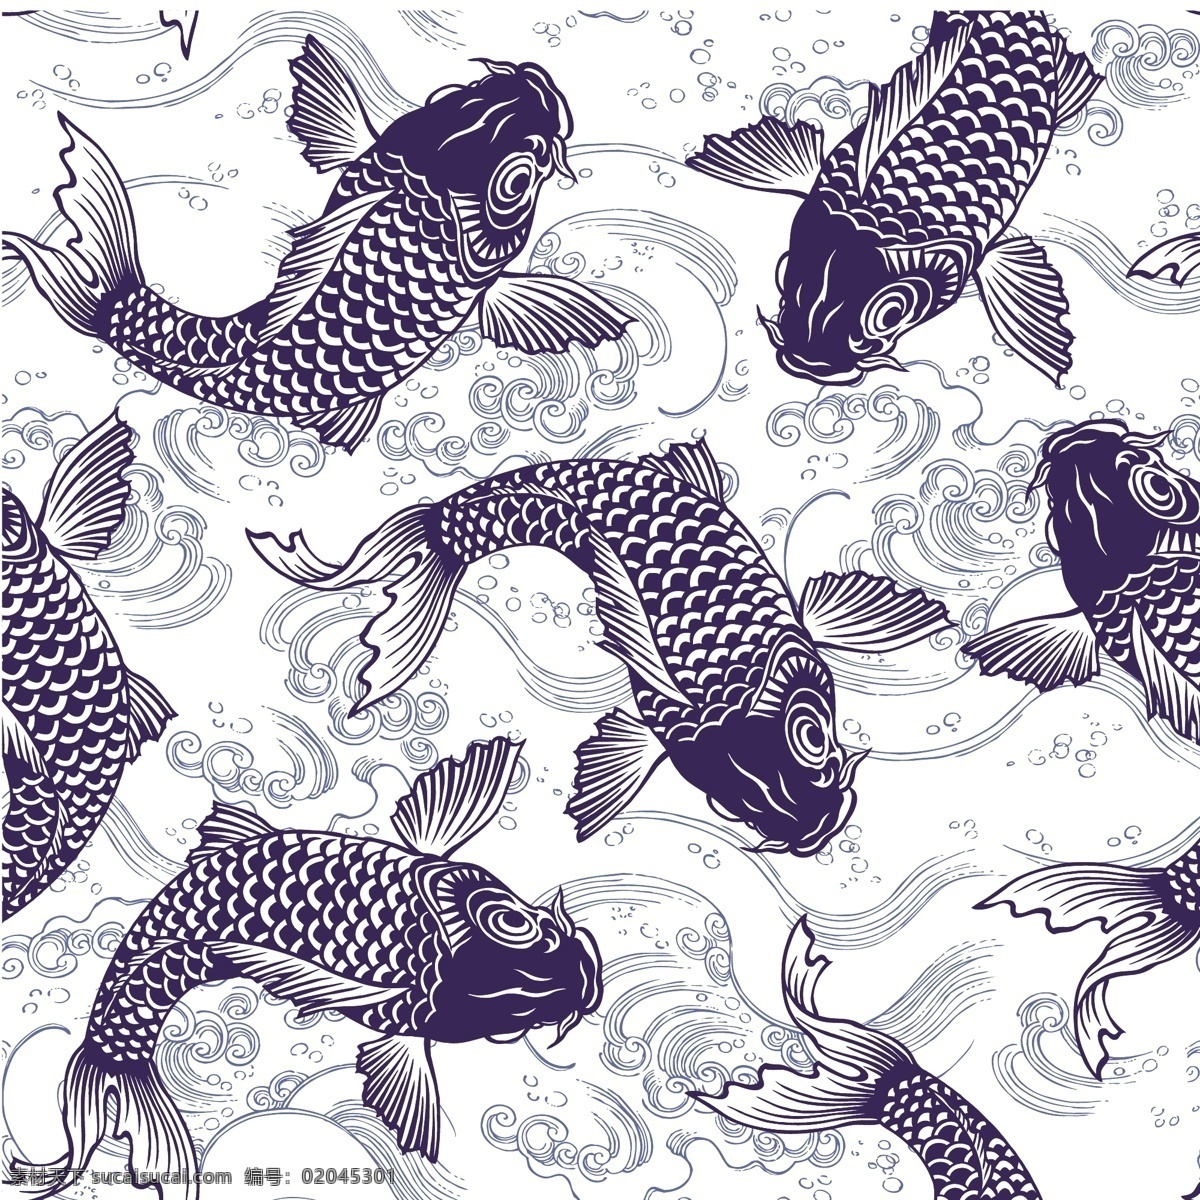 鲤鱼插画图案 中国风鲤鱼 鲤鱼绘画 鲤鱼插画 鲤鱼图案 中式鲤鱼 鱼类 风水装饰